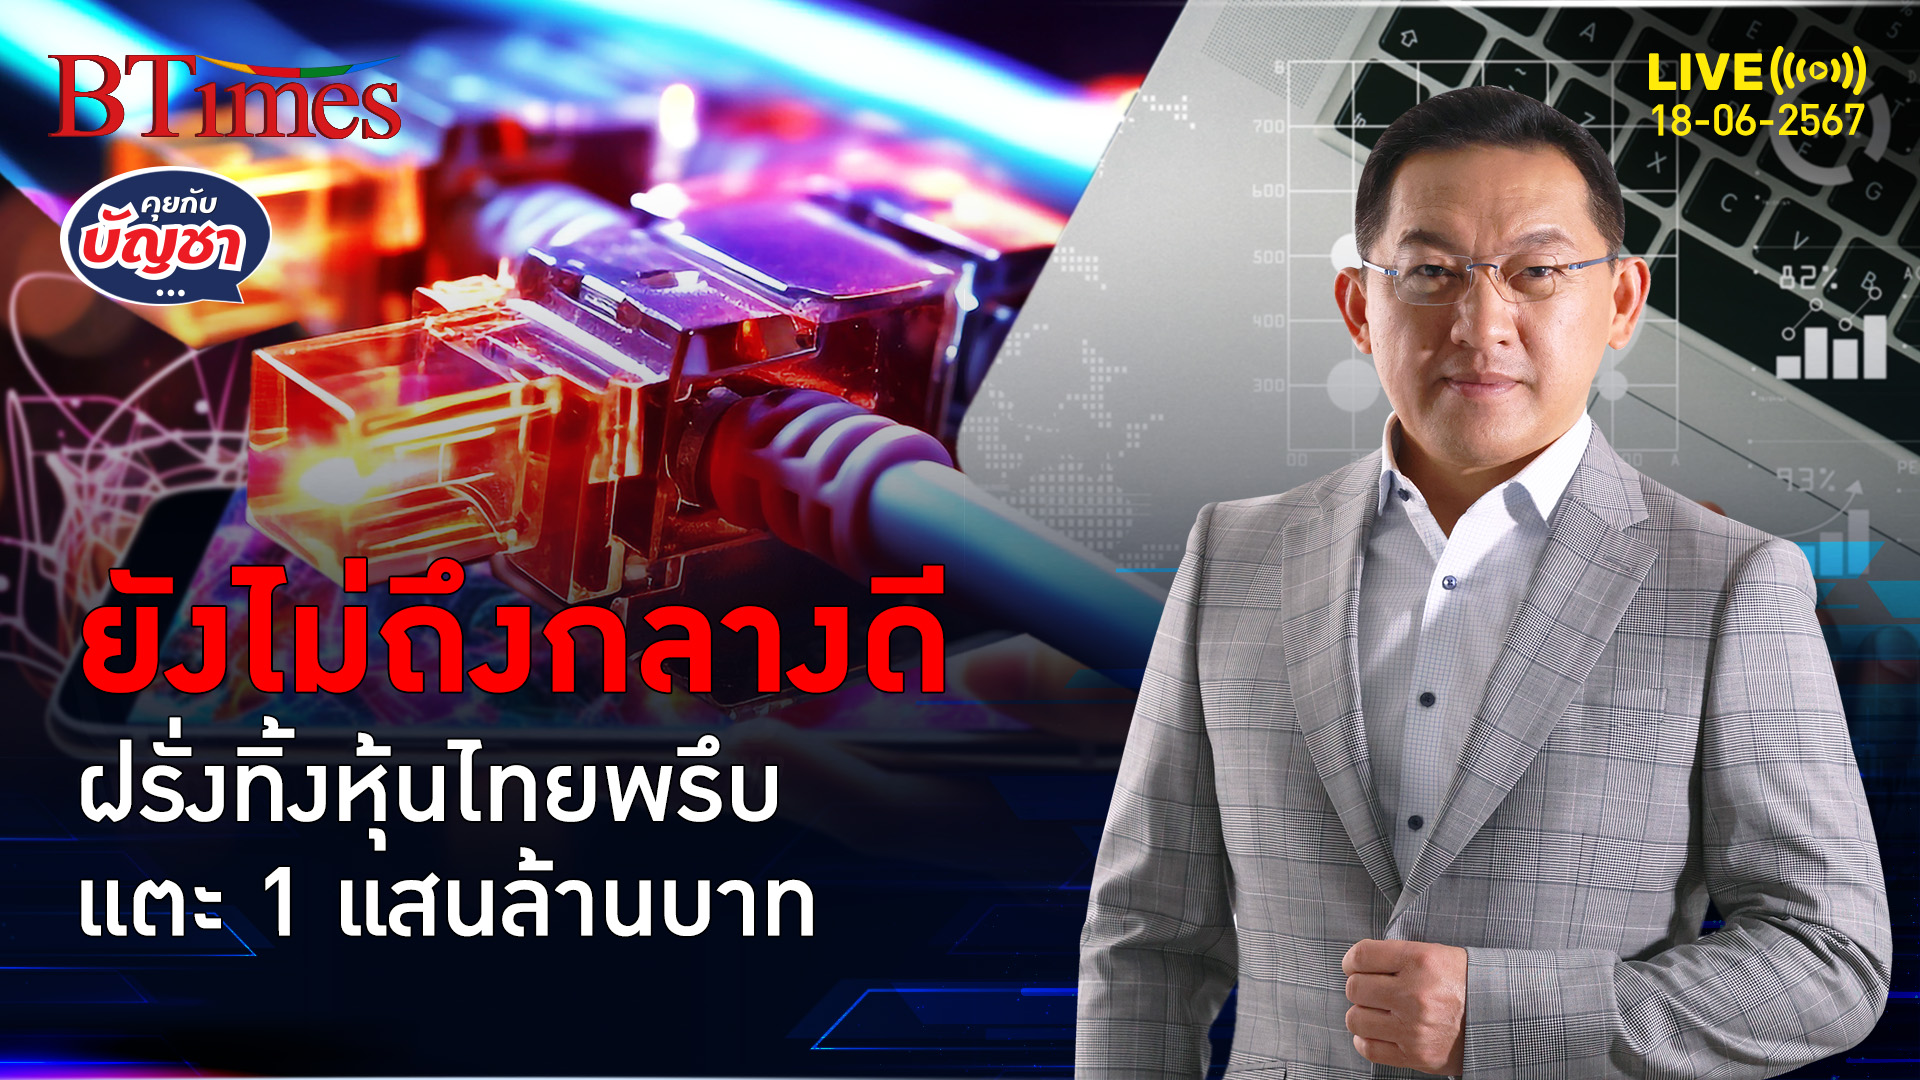 หุ้นไทยโดนเมินแรง ฝรั่งเทขายหุ้นไทยแตะ 1 แสนล้านบาทก่อนถึงครึ่งปี | คุยกับบัญชา l 18 มิ.ย. 67